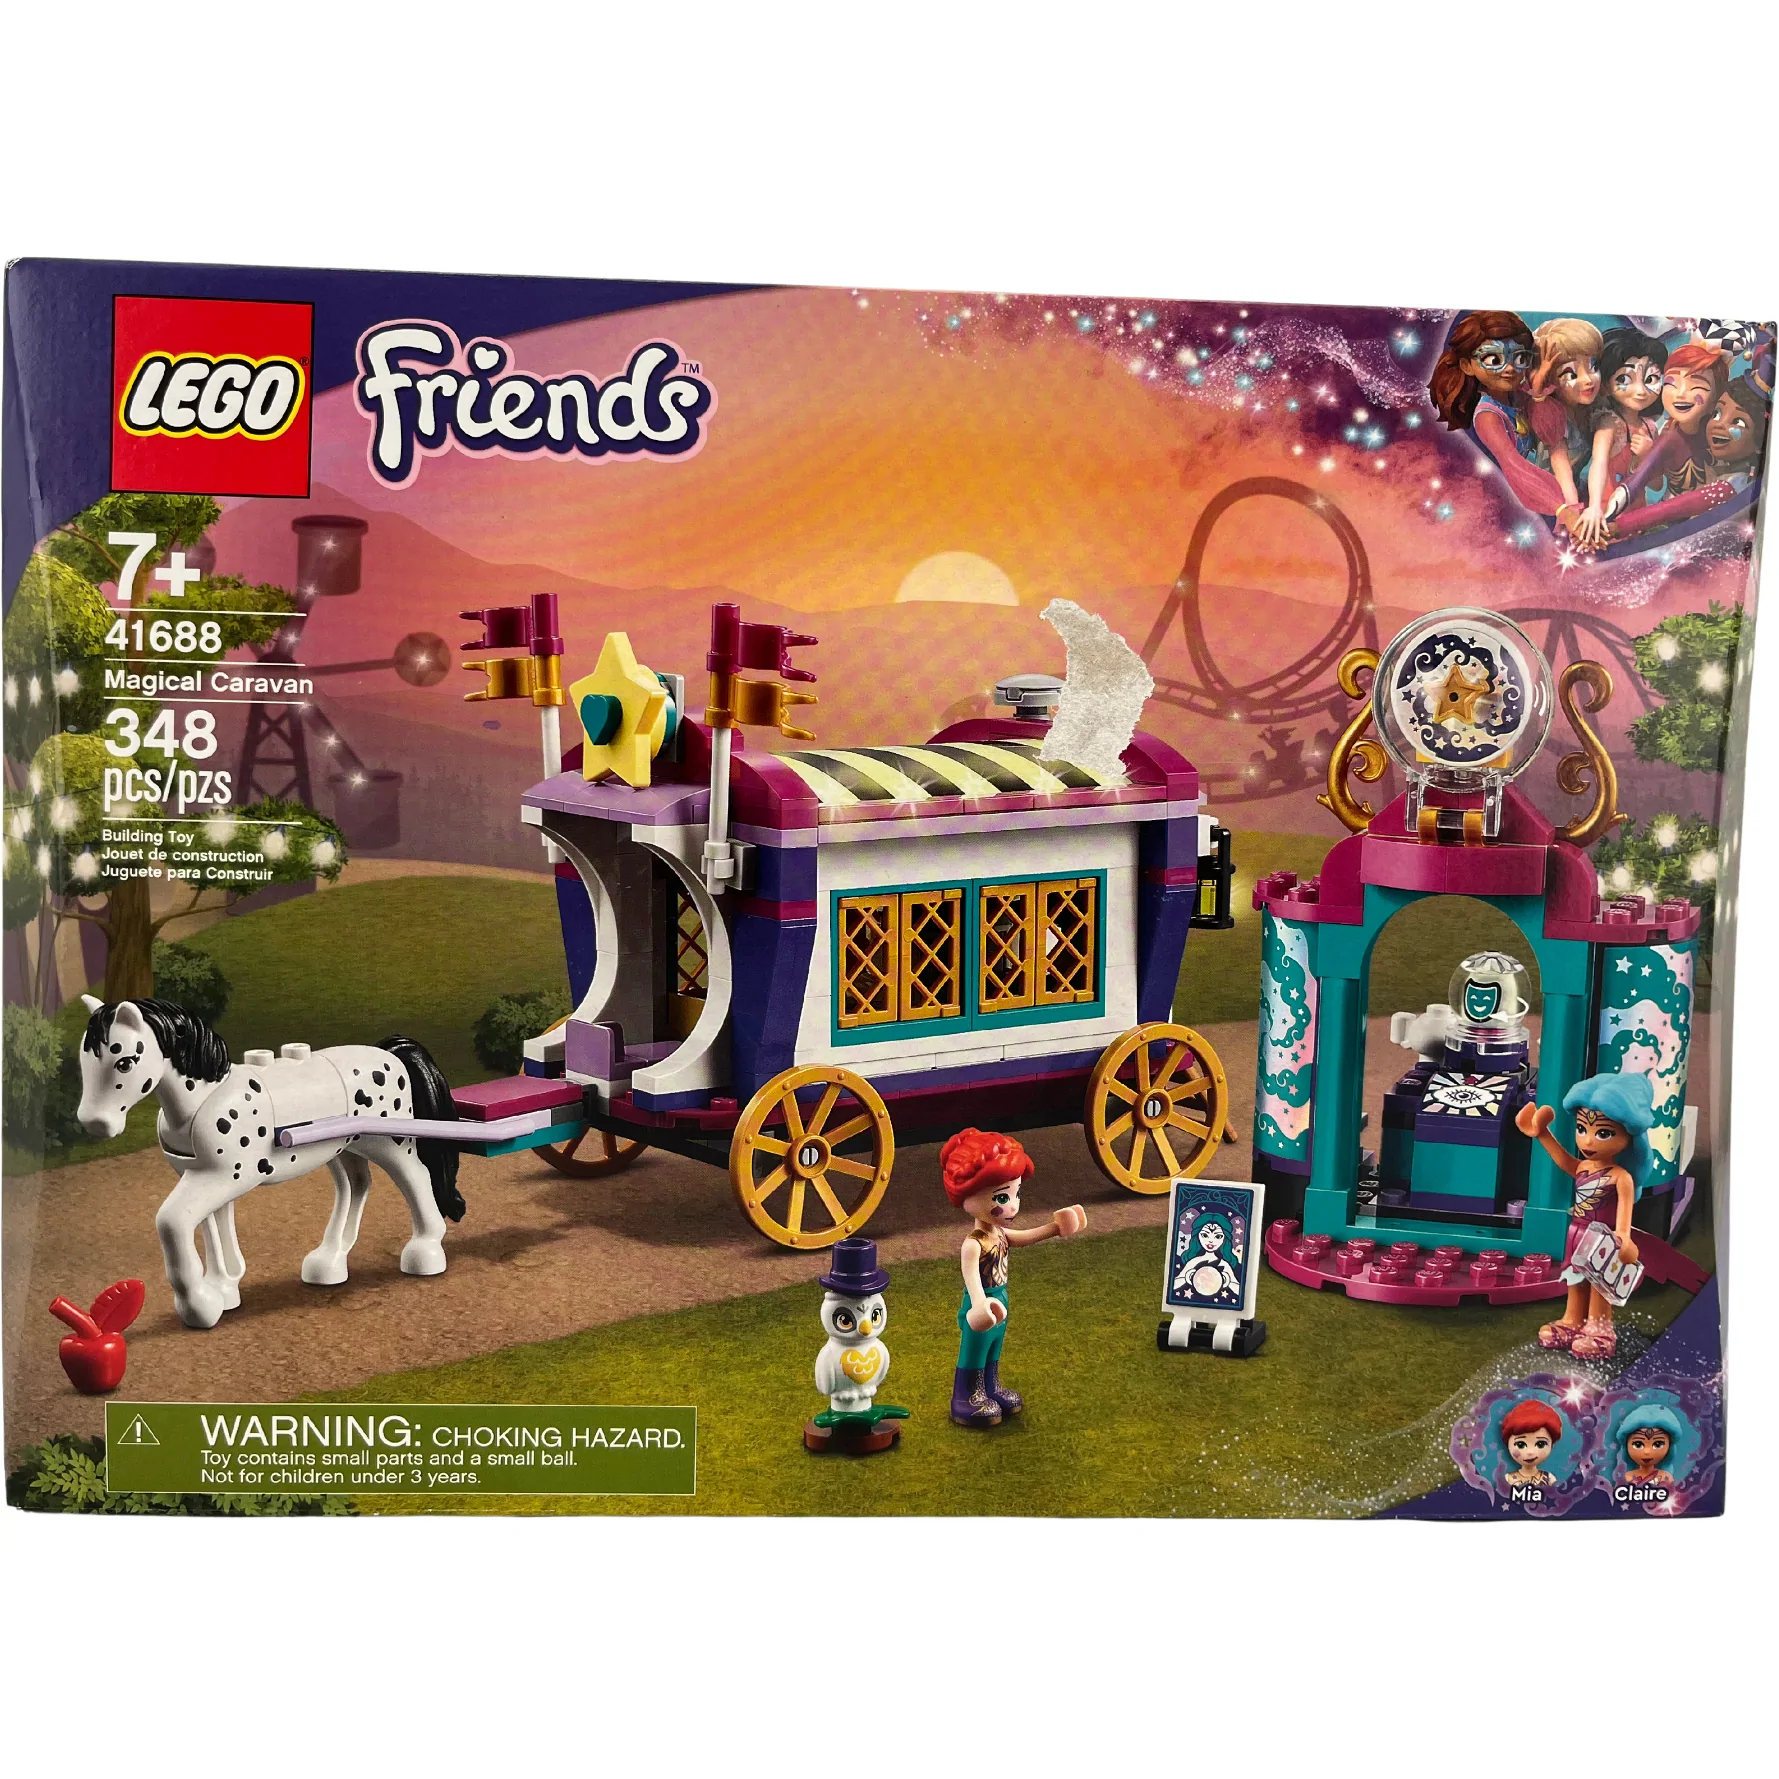 Lego Friends Magical Caravan Building Set: 41688 / 348 pieces / 7+